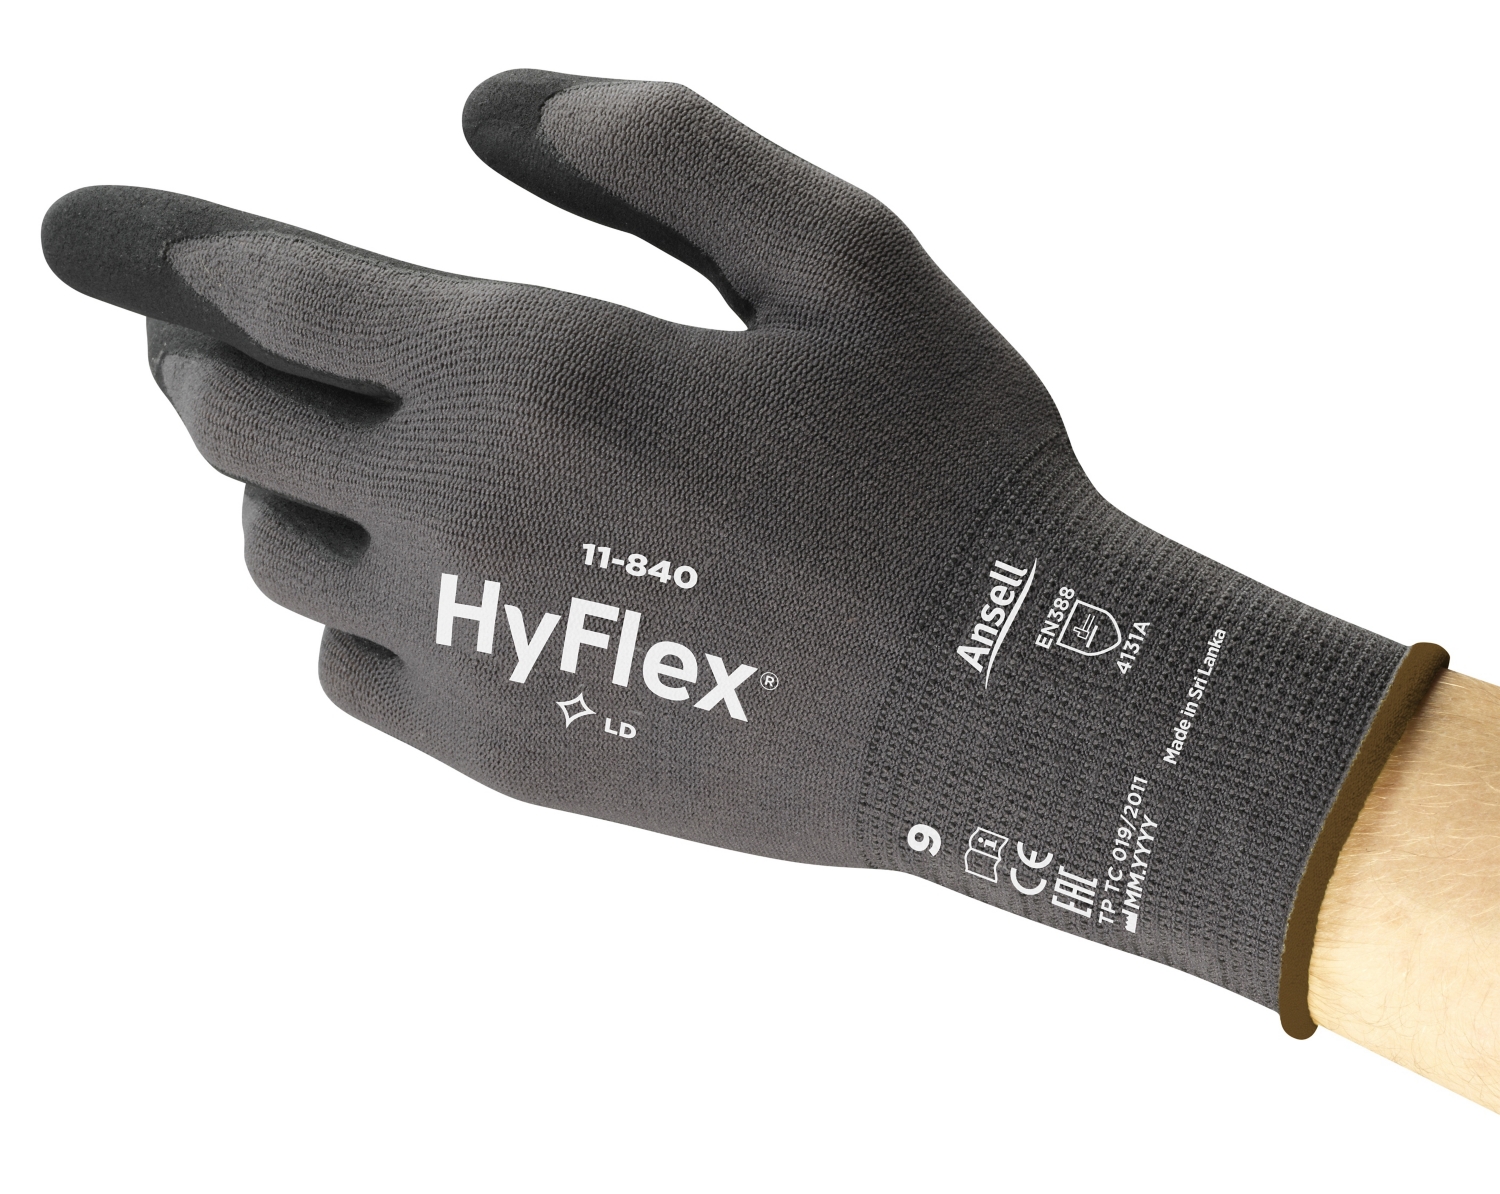  Gants HyFlex 11-840 - Technologie Fortix 